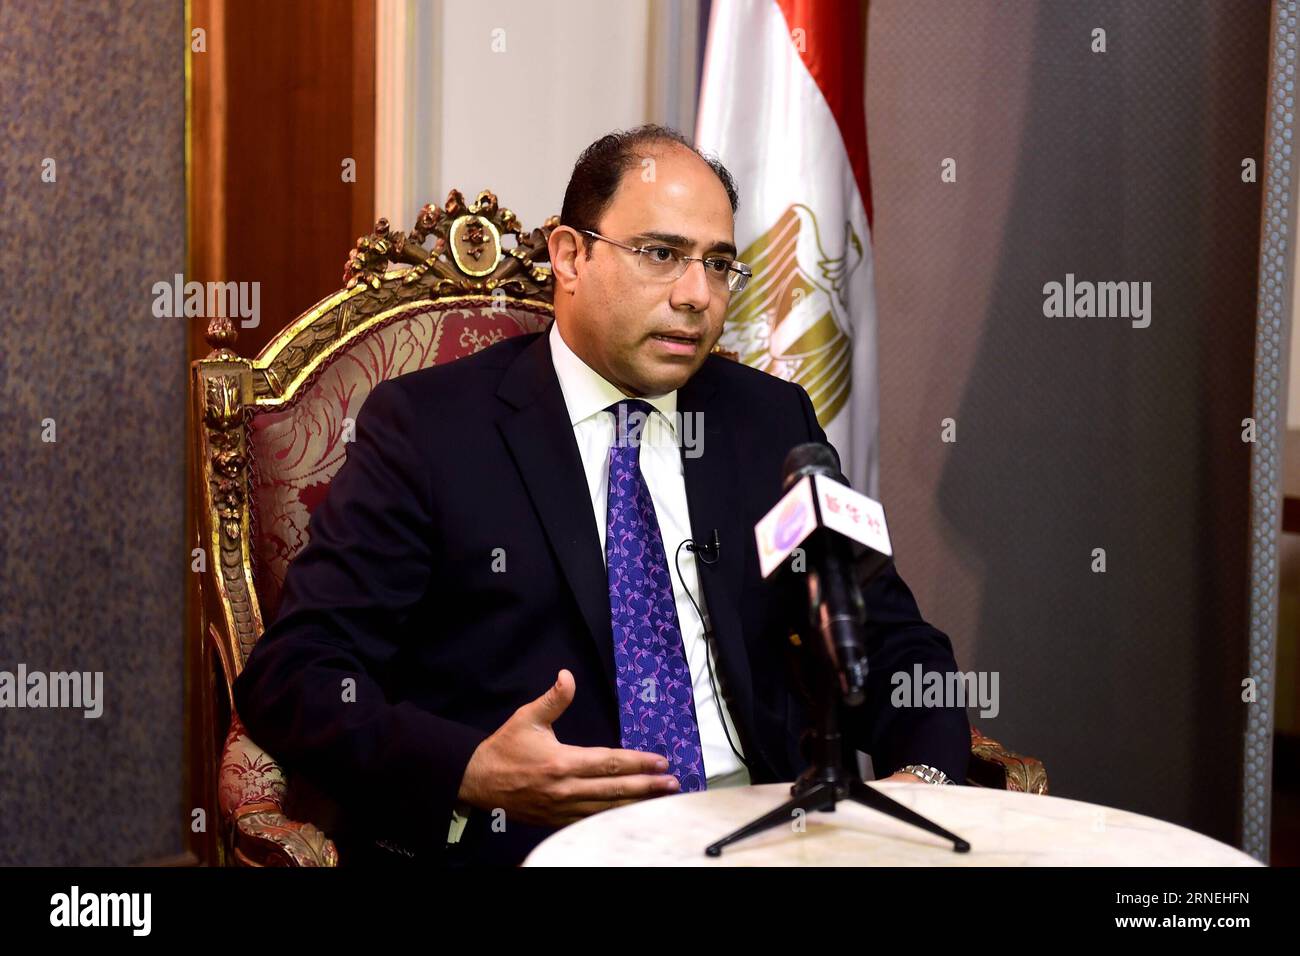 KAIRO, 23. Juni 2016 – Ahmed Abu Zaid, Sprecher des ägyptischen Außenministeriums, spricht in einem Interview mit Xinhua in Kairo, Ägypten, am 23. Juni 2016. Das Südchinesische Meer-Problem sollte friedlich gelöst werden, ohne dass Maßnahmen ergriffen werden, die Spannungen eskalieren würden, sagte Ahmed Abu Zaid am Donnerstag hier. ) ÄGYPTEN-KAIRO-CHINA-SÜDCHINESISCHE MEERESFRAGE ZhaoxDingzhe PUBLICATIONxNOTxINxCHN Kairo 23. Juni 2016 Ahmed Abu Zaid Sprecher des ägyptischen Außenministeriums spricht im Interview mit XINHUA in Kairo Ägypten AM 23. Juni 2016 sollte die Südchinesische Meeresfrage friedlich gelöst werden, ohne dass Aktionen Thatcher esca würde Stockfoto